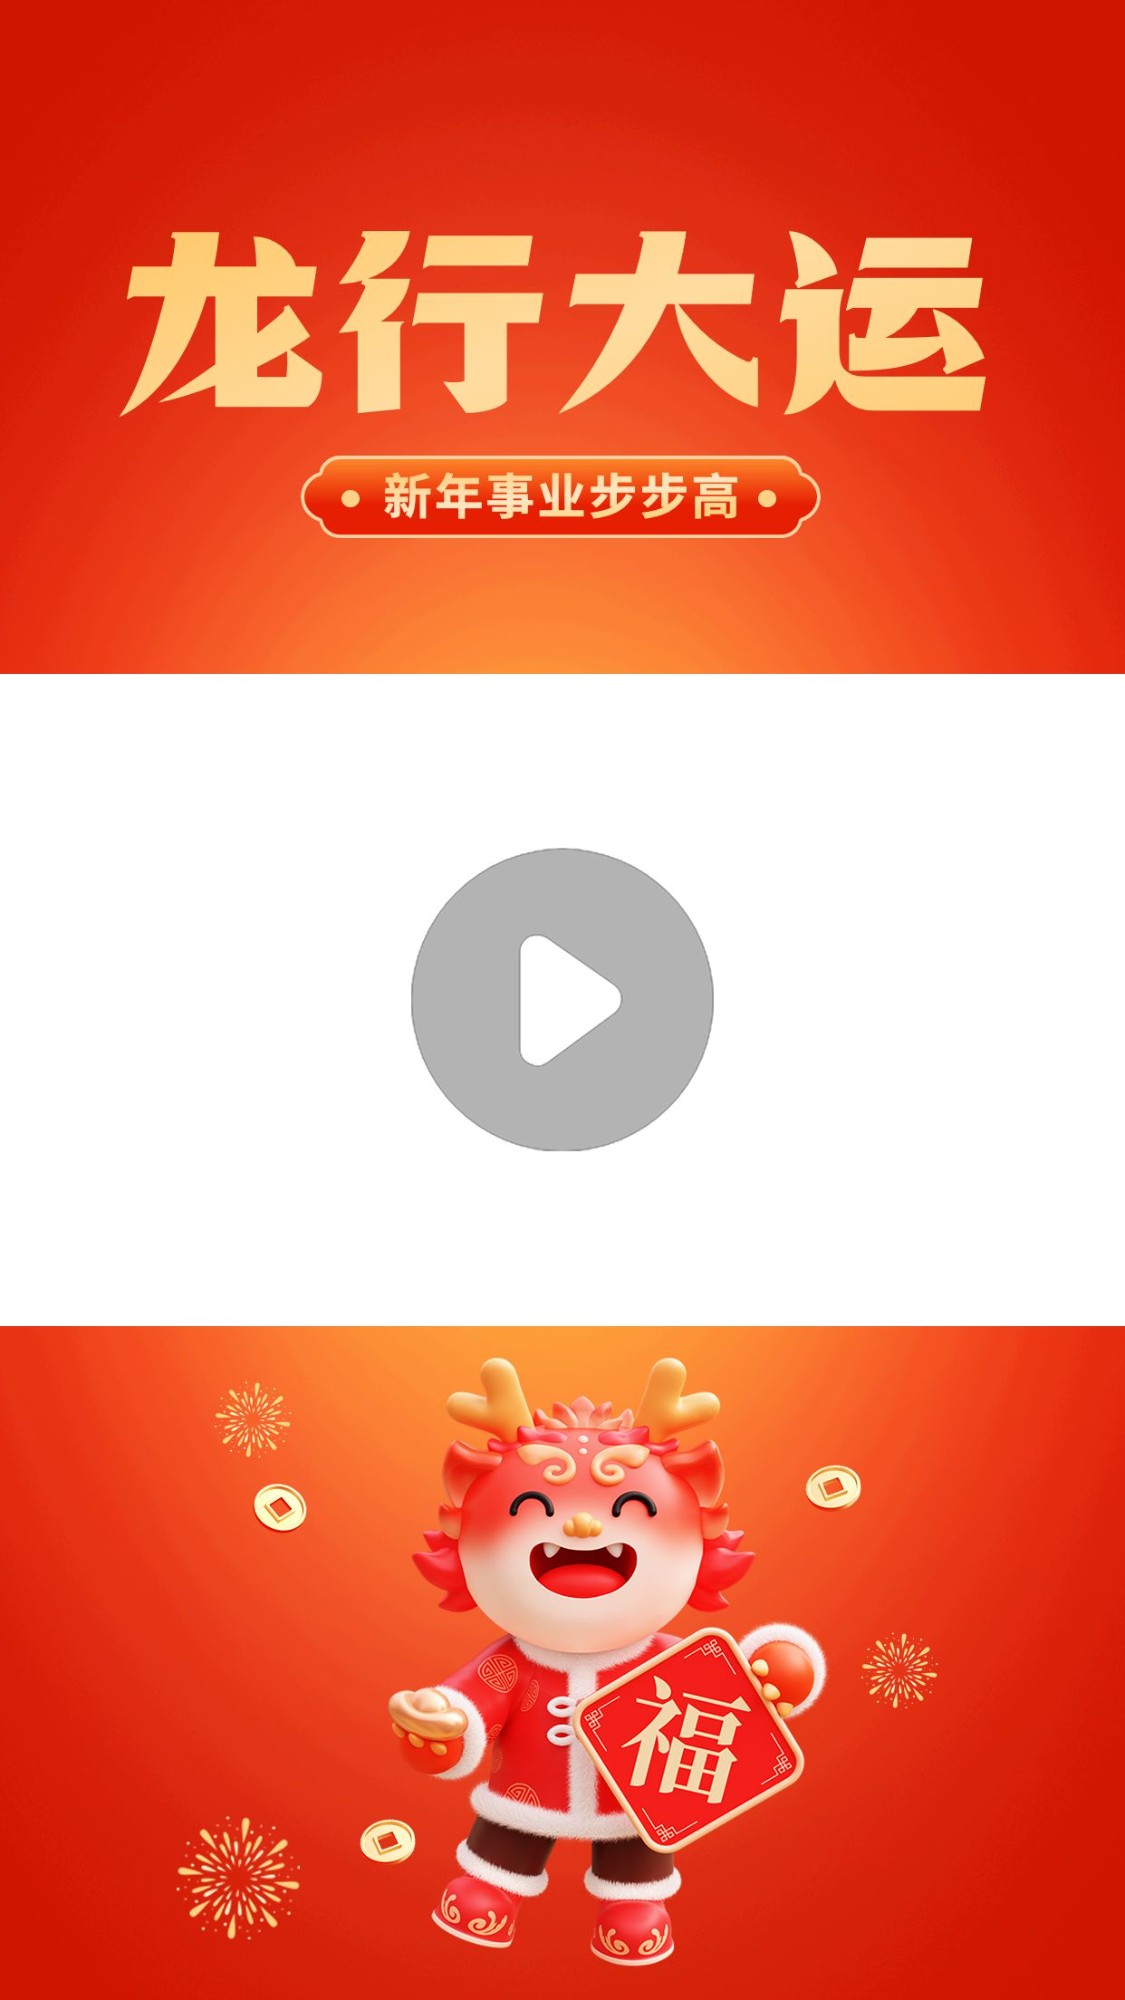 教育培训龙年大吉春节祝福视频边框